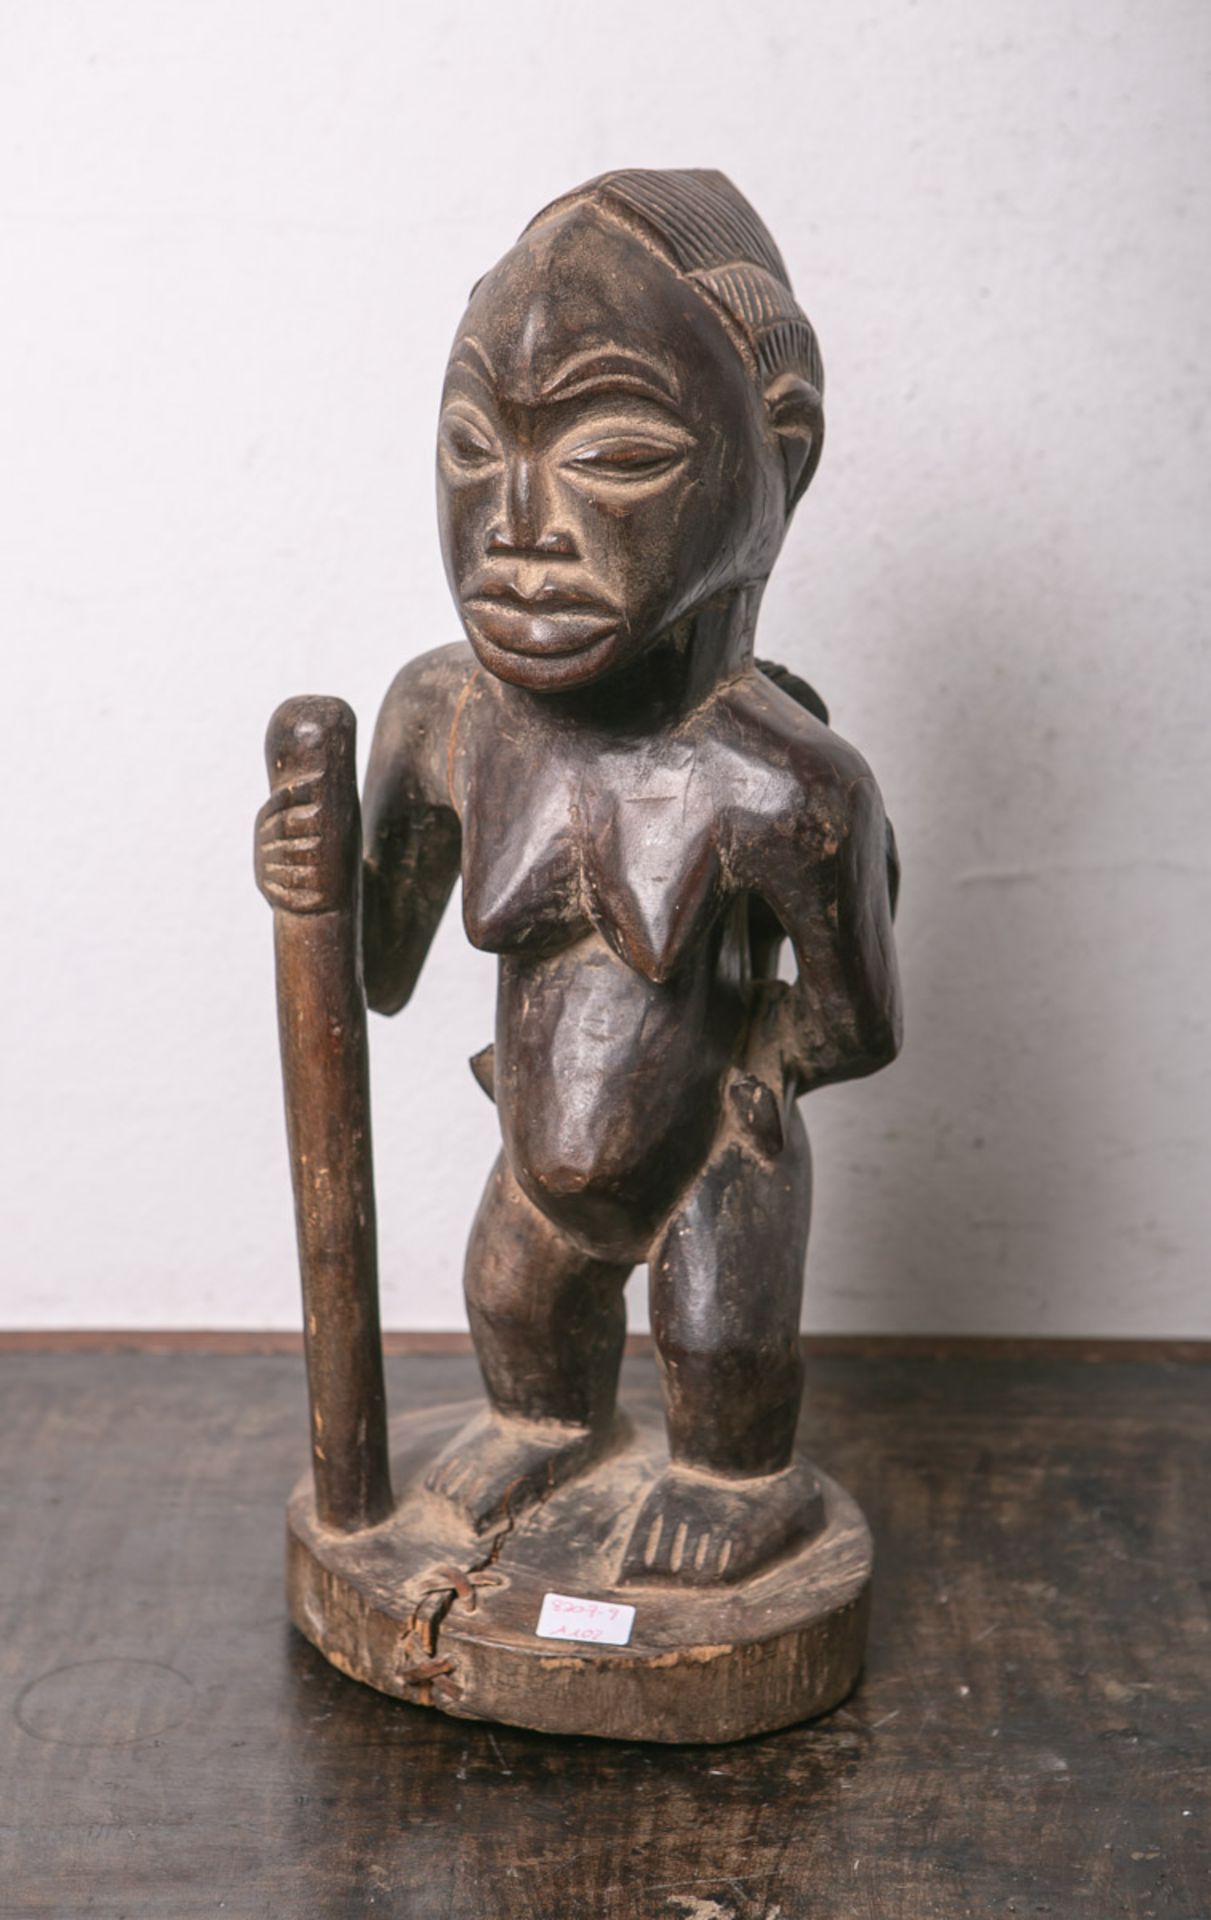 Mutter m. Kind (Nigeria, Stamm der Yohuba)